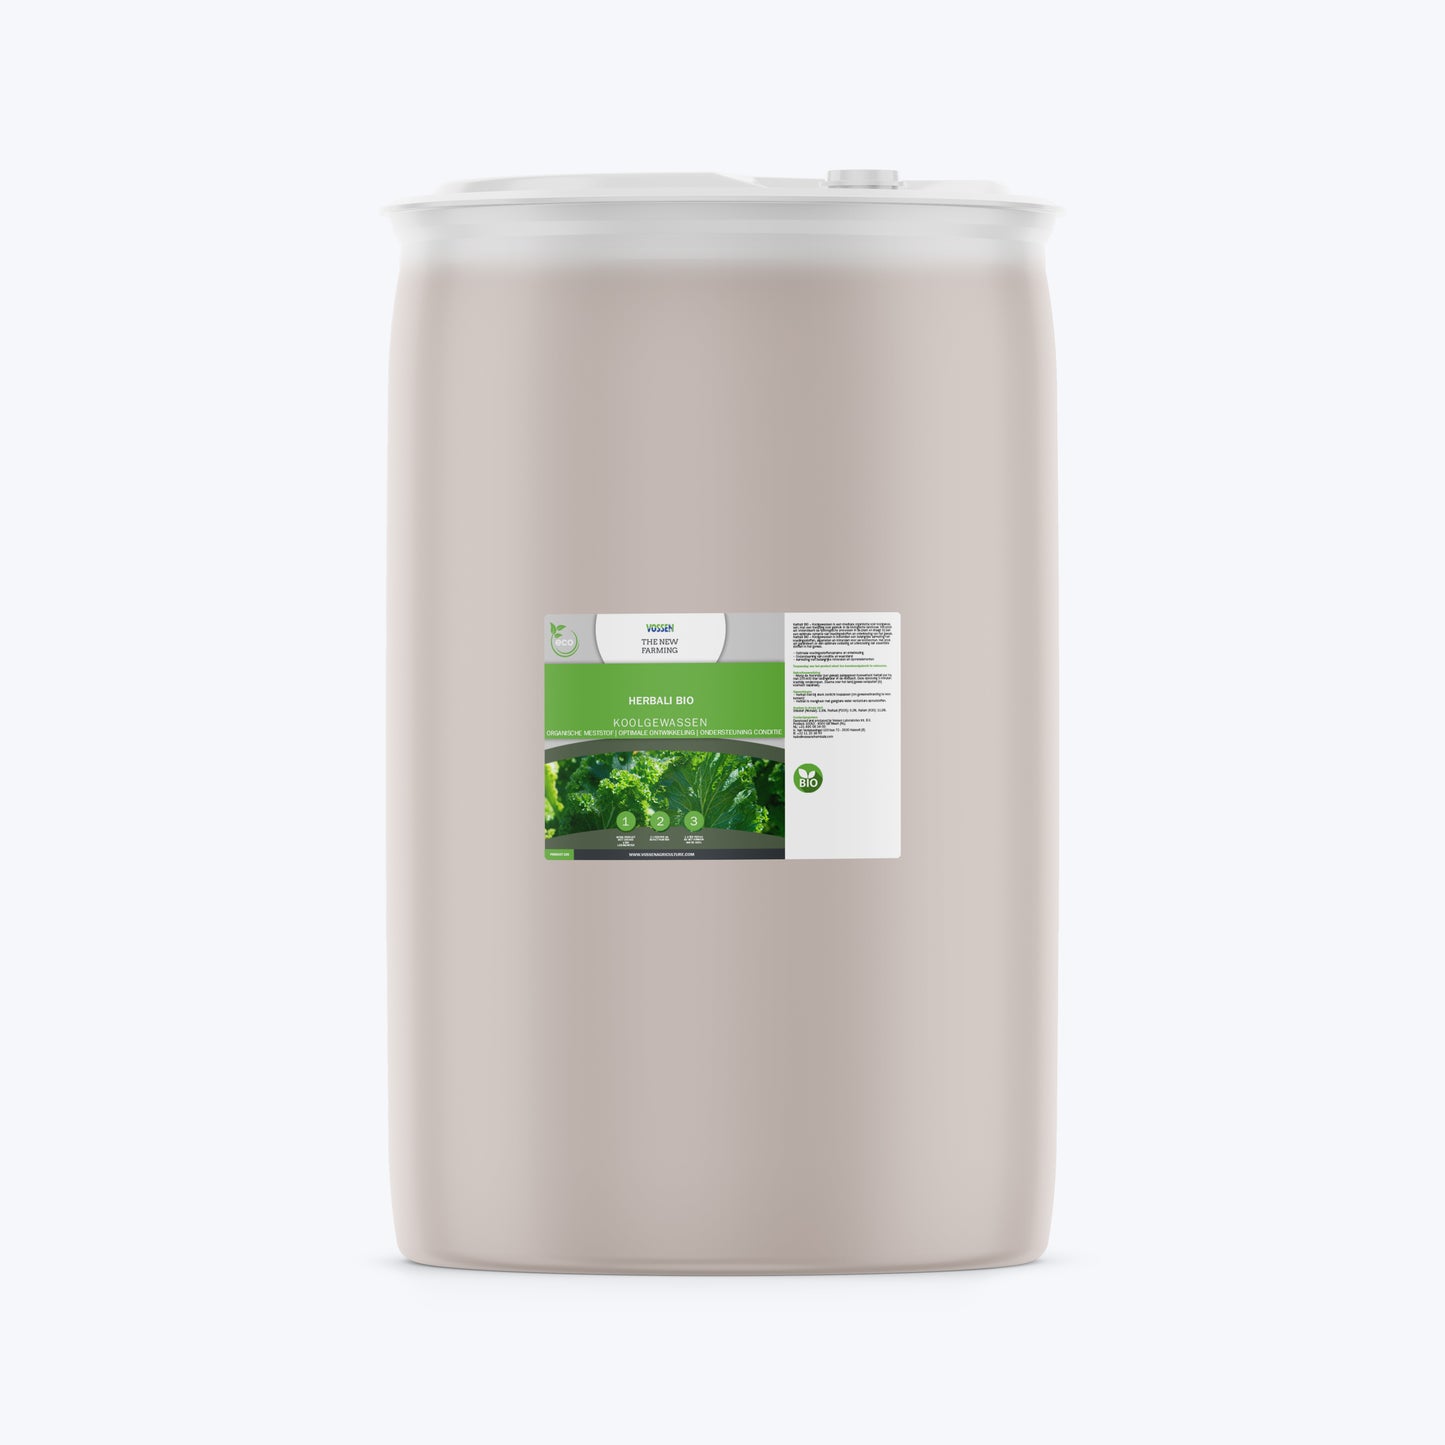 Herbali BIO – Cabbage Crops